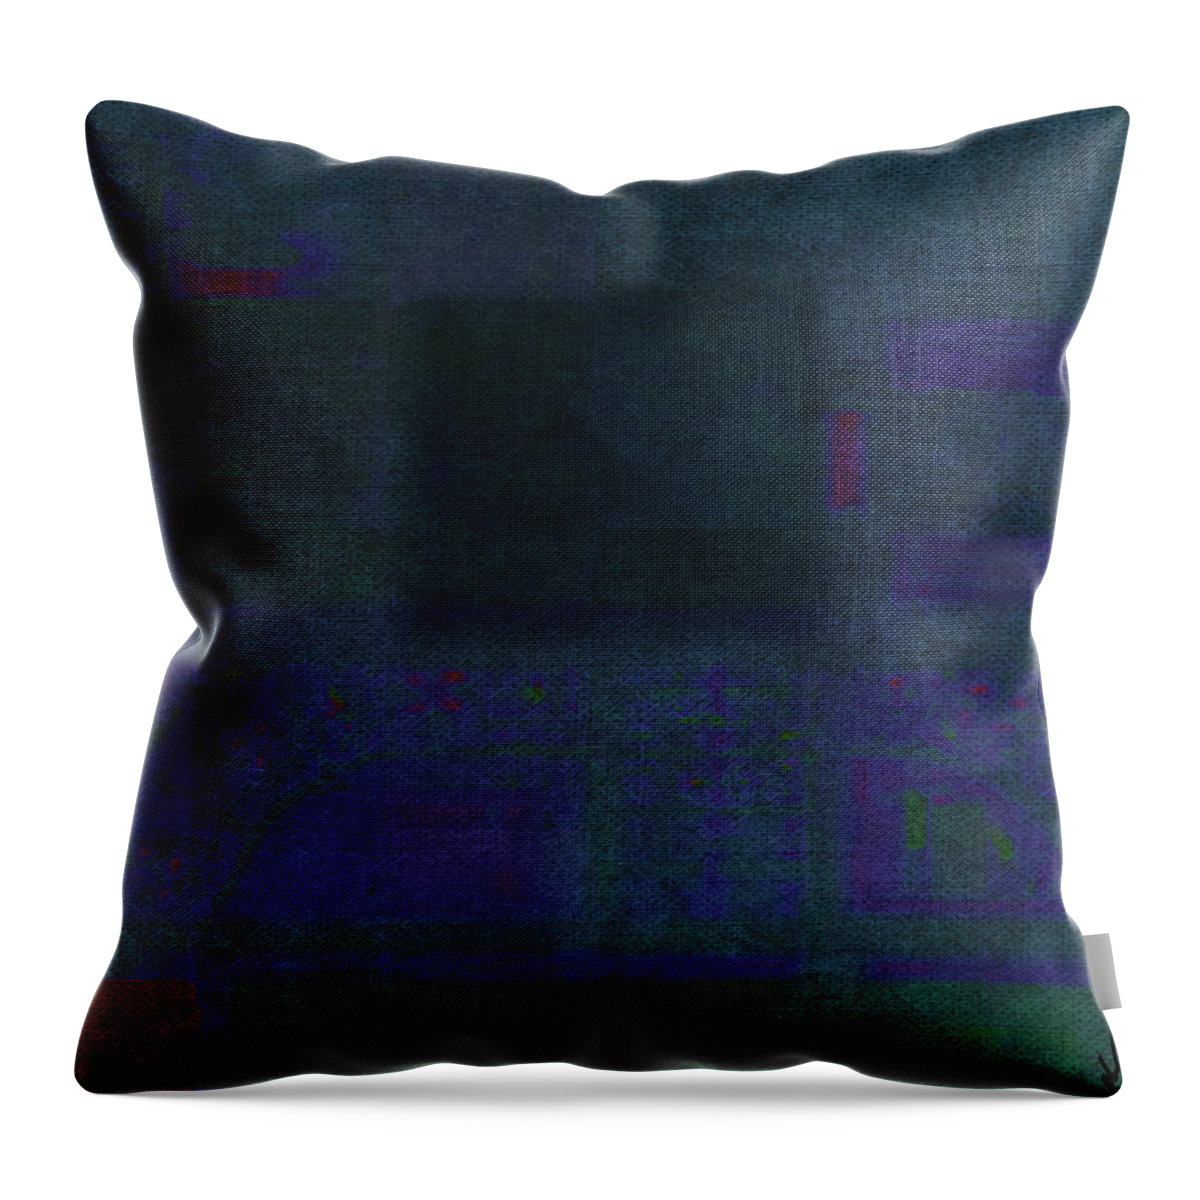 Abstract Throw Pillow featuring the digital art The Hidden by Ken Walker